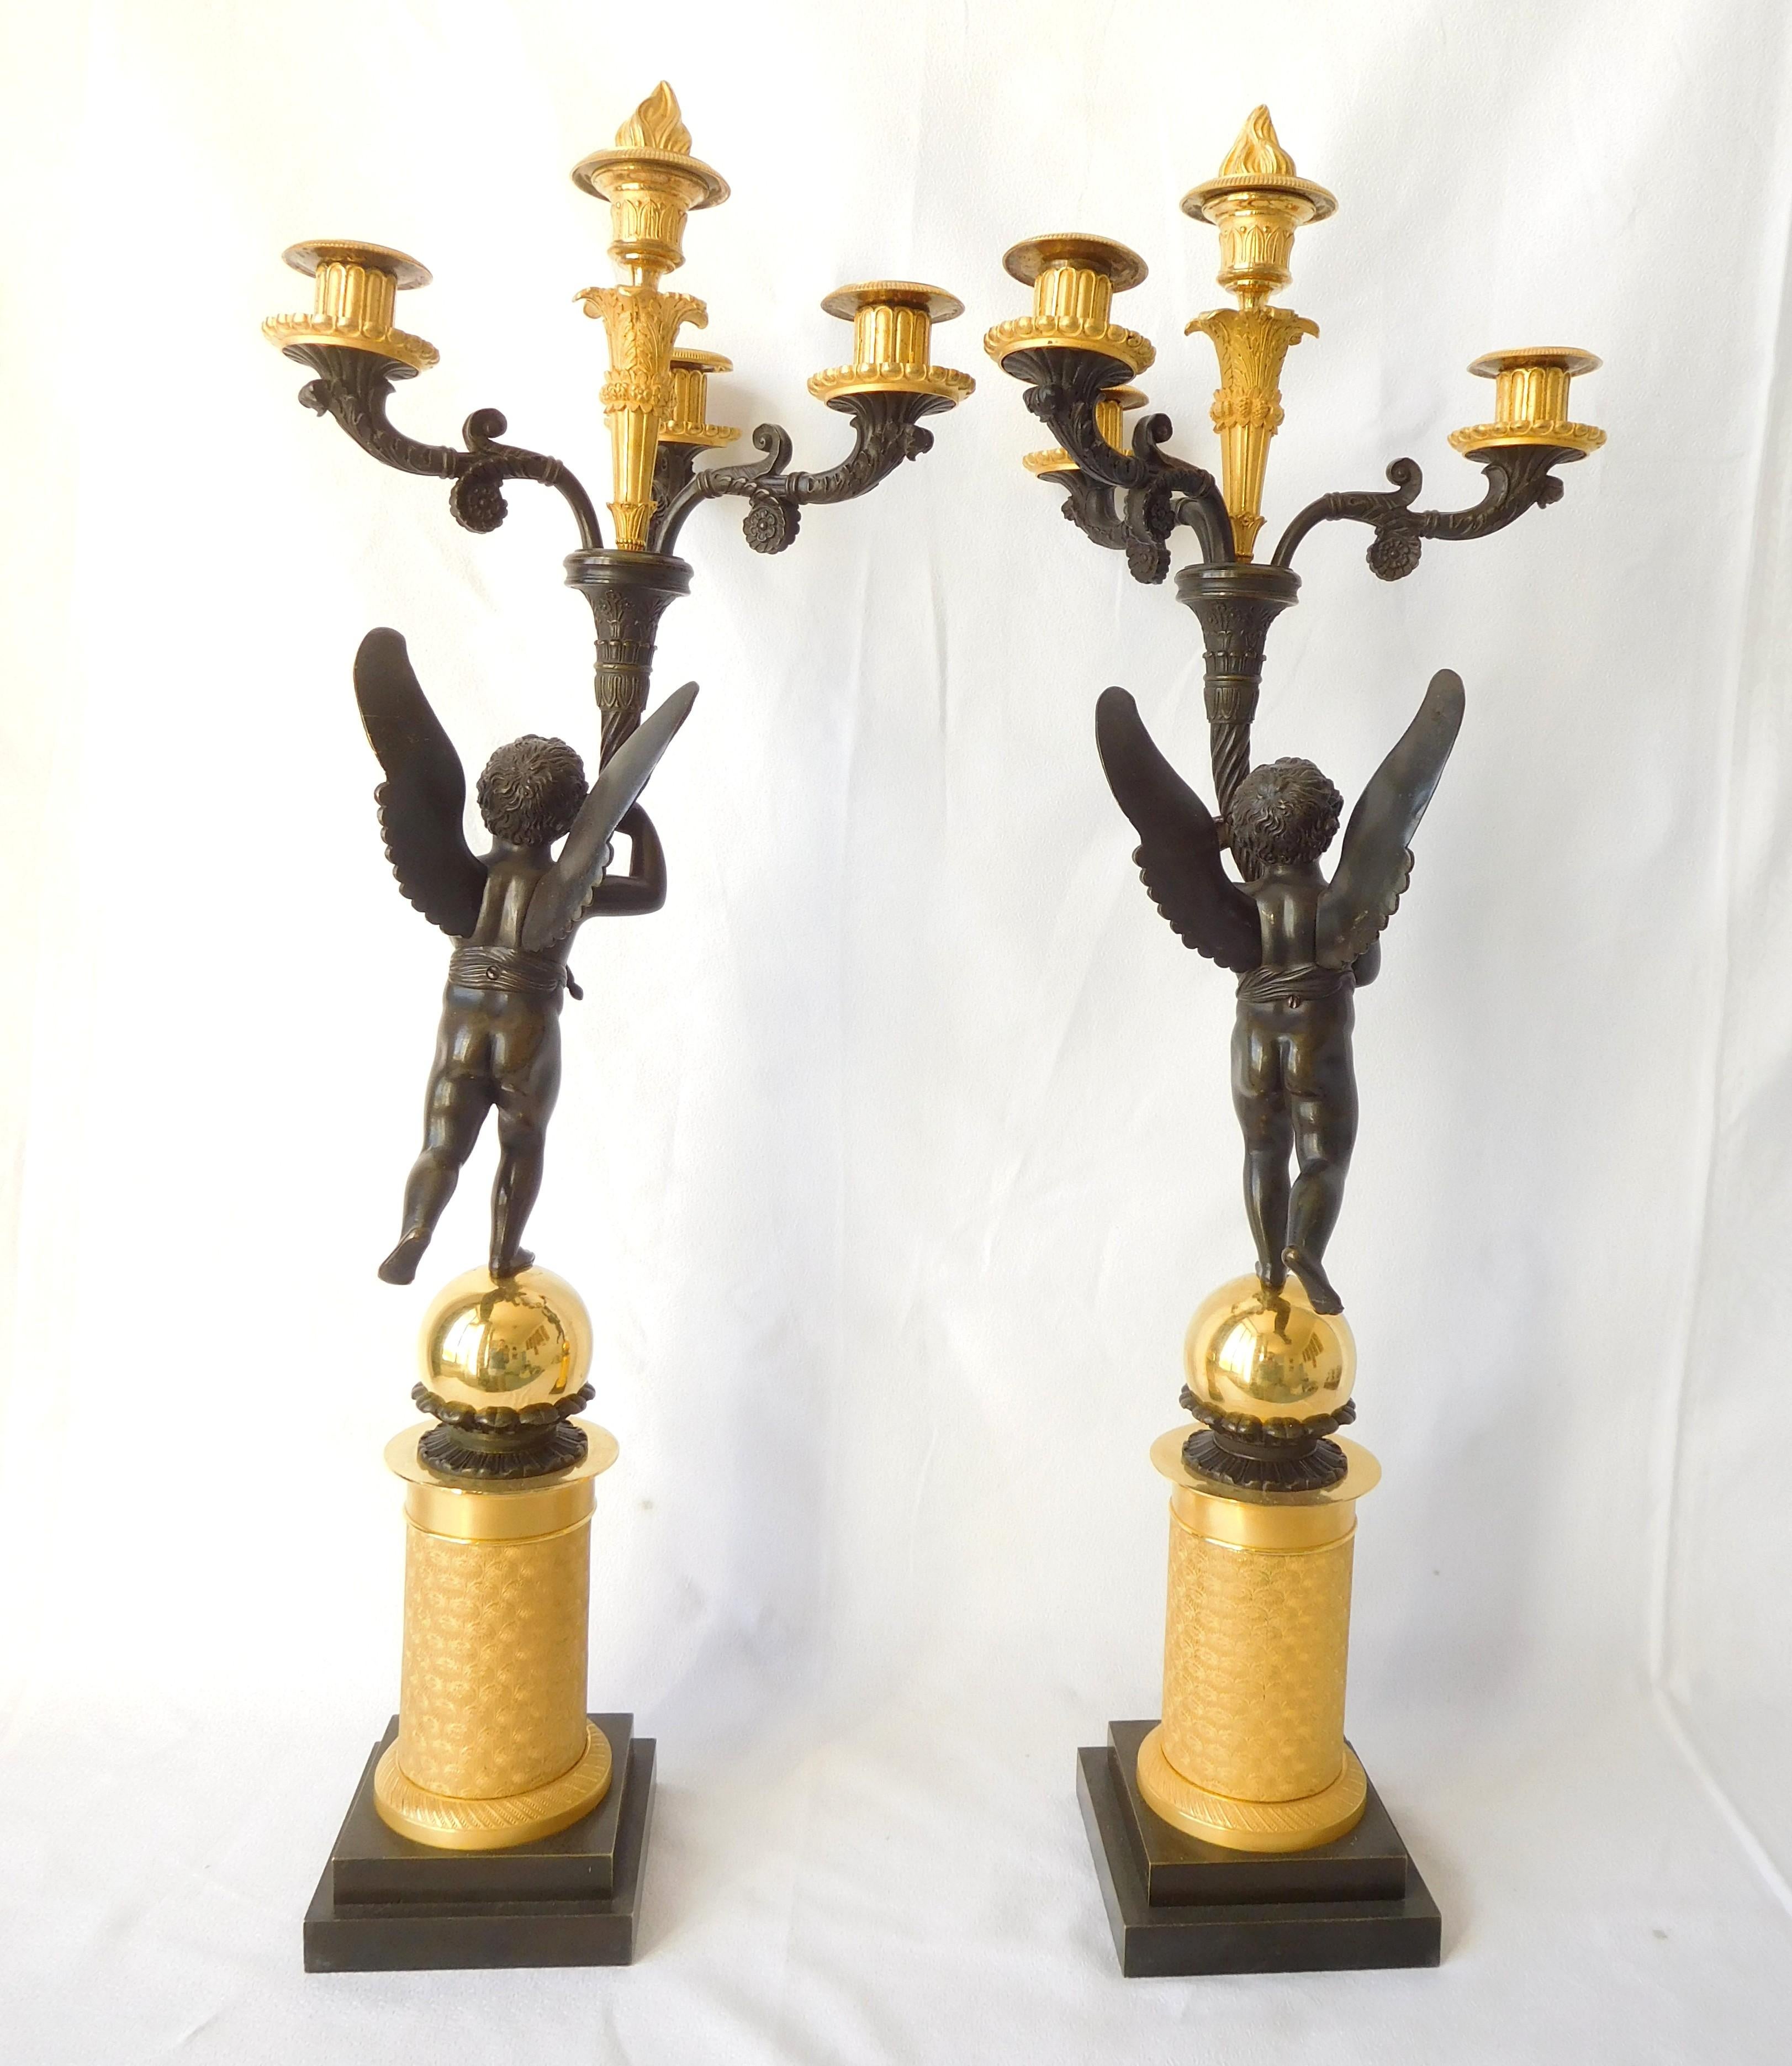 Paar hohe Kandelaber aus Ormolu (vergoldete Quecksilberbronze) und patinierter Bronze, französische Empire-Produktion, frühes 19. Jahrhundert, ca. 1815 - 1820.
Großes 4-flammiges Modell, das von geflügelten Putten gehalten wird und auf einem fein